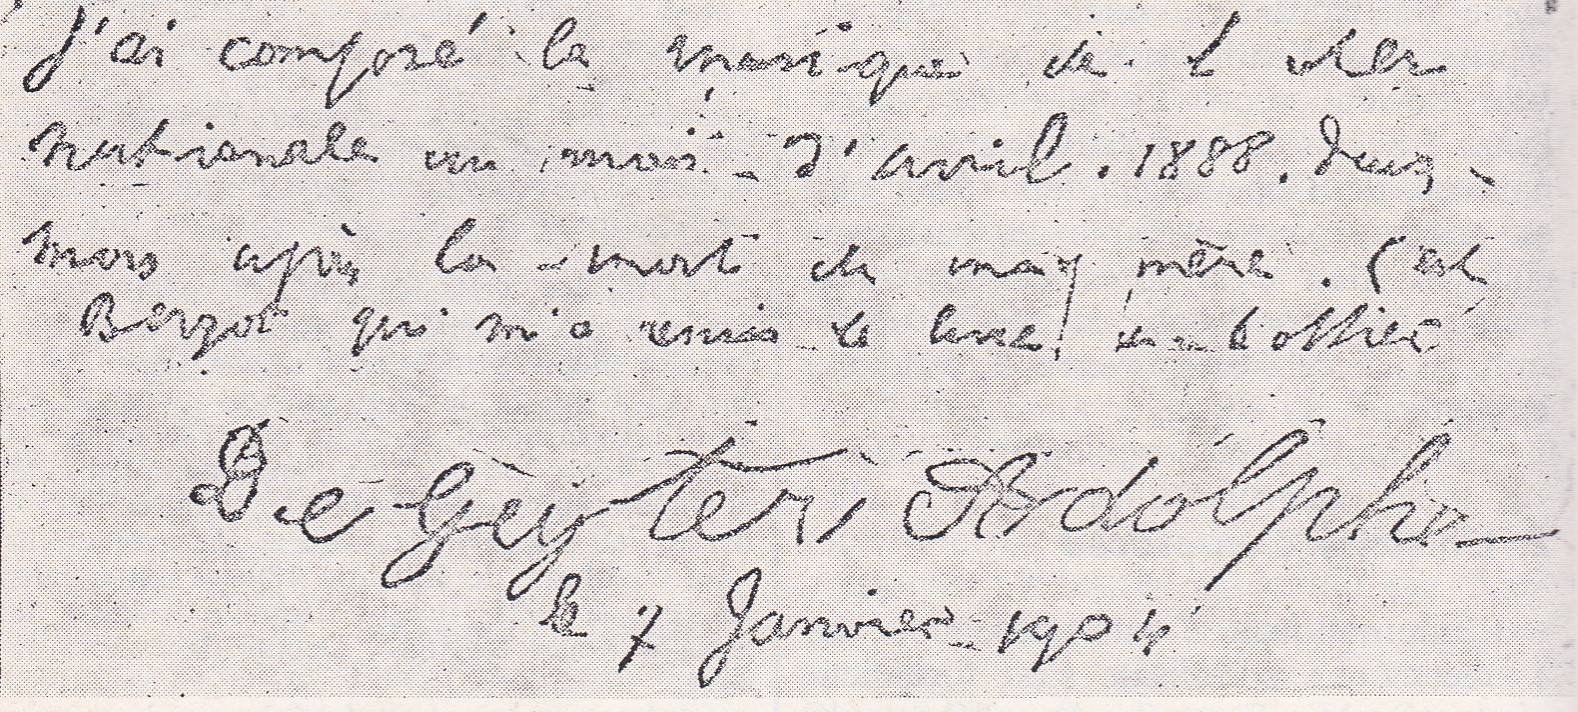 Lettre écrite par Adolphe Degeyter et dictée par Delory (7 janvier 1904)